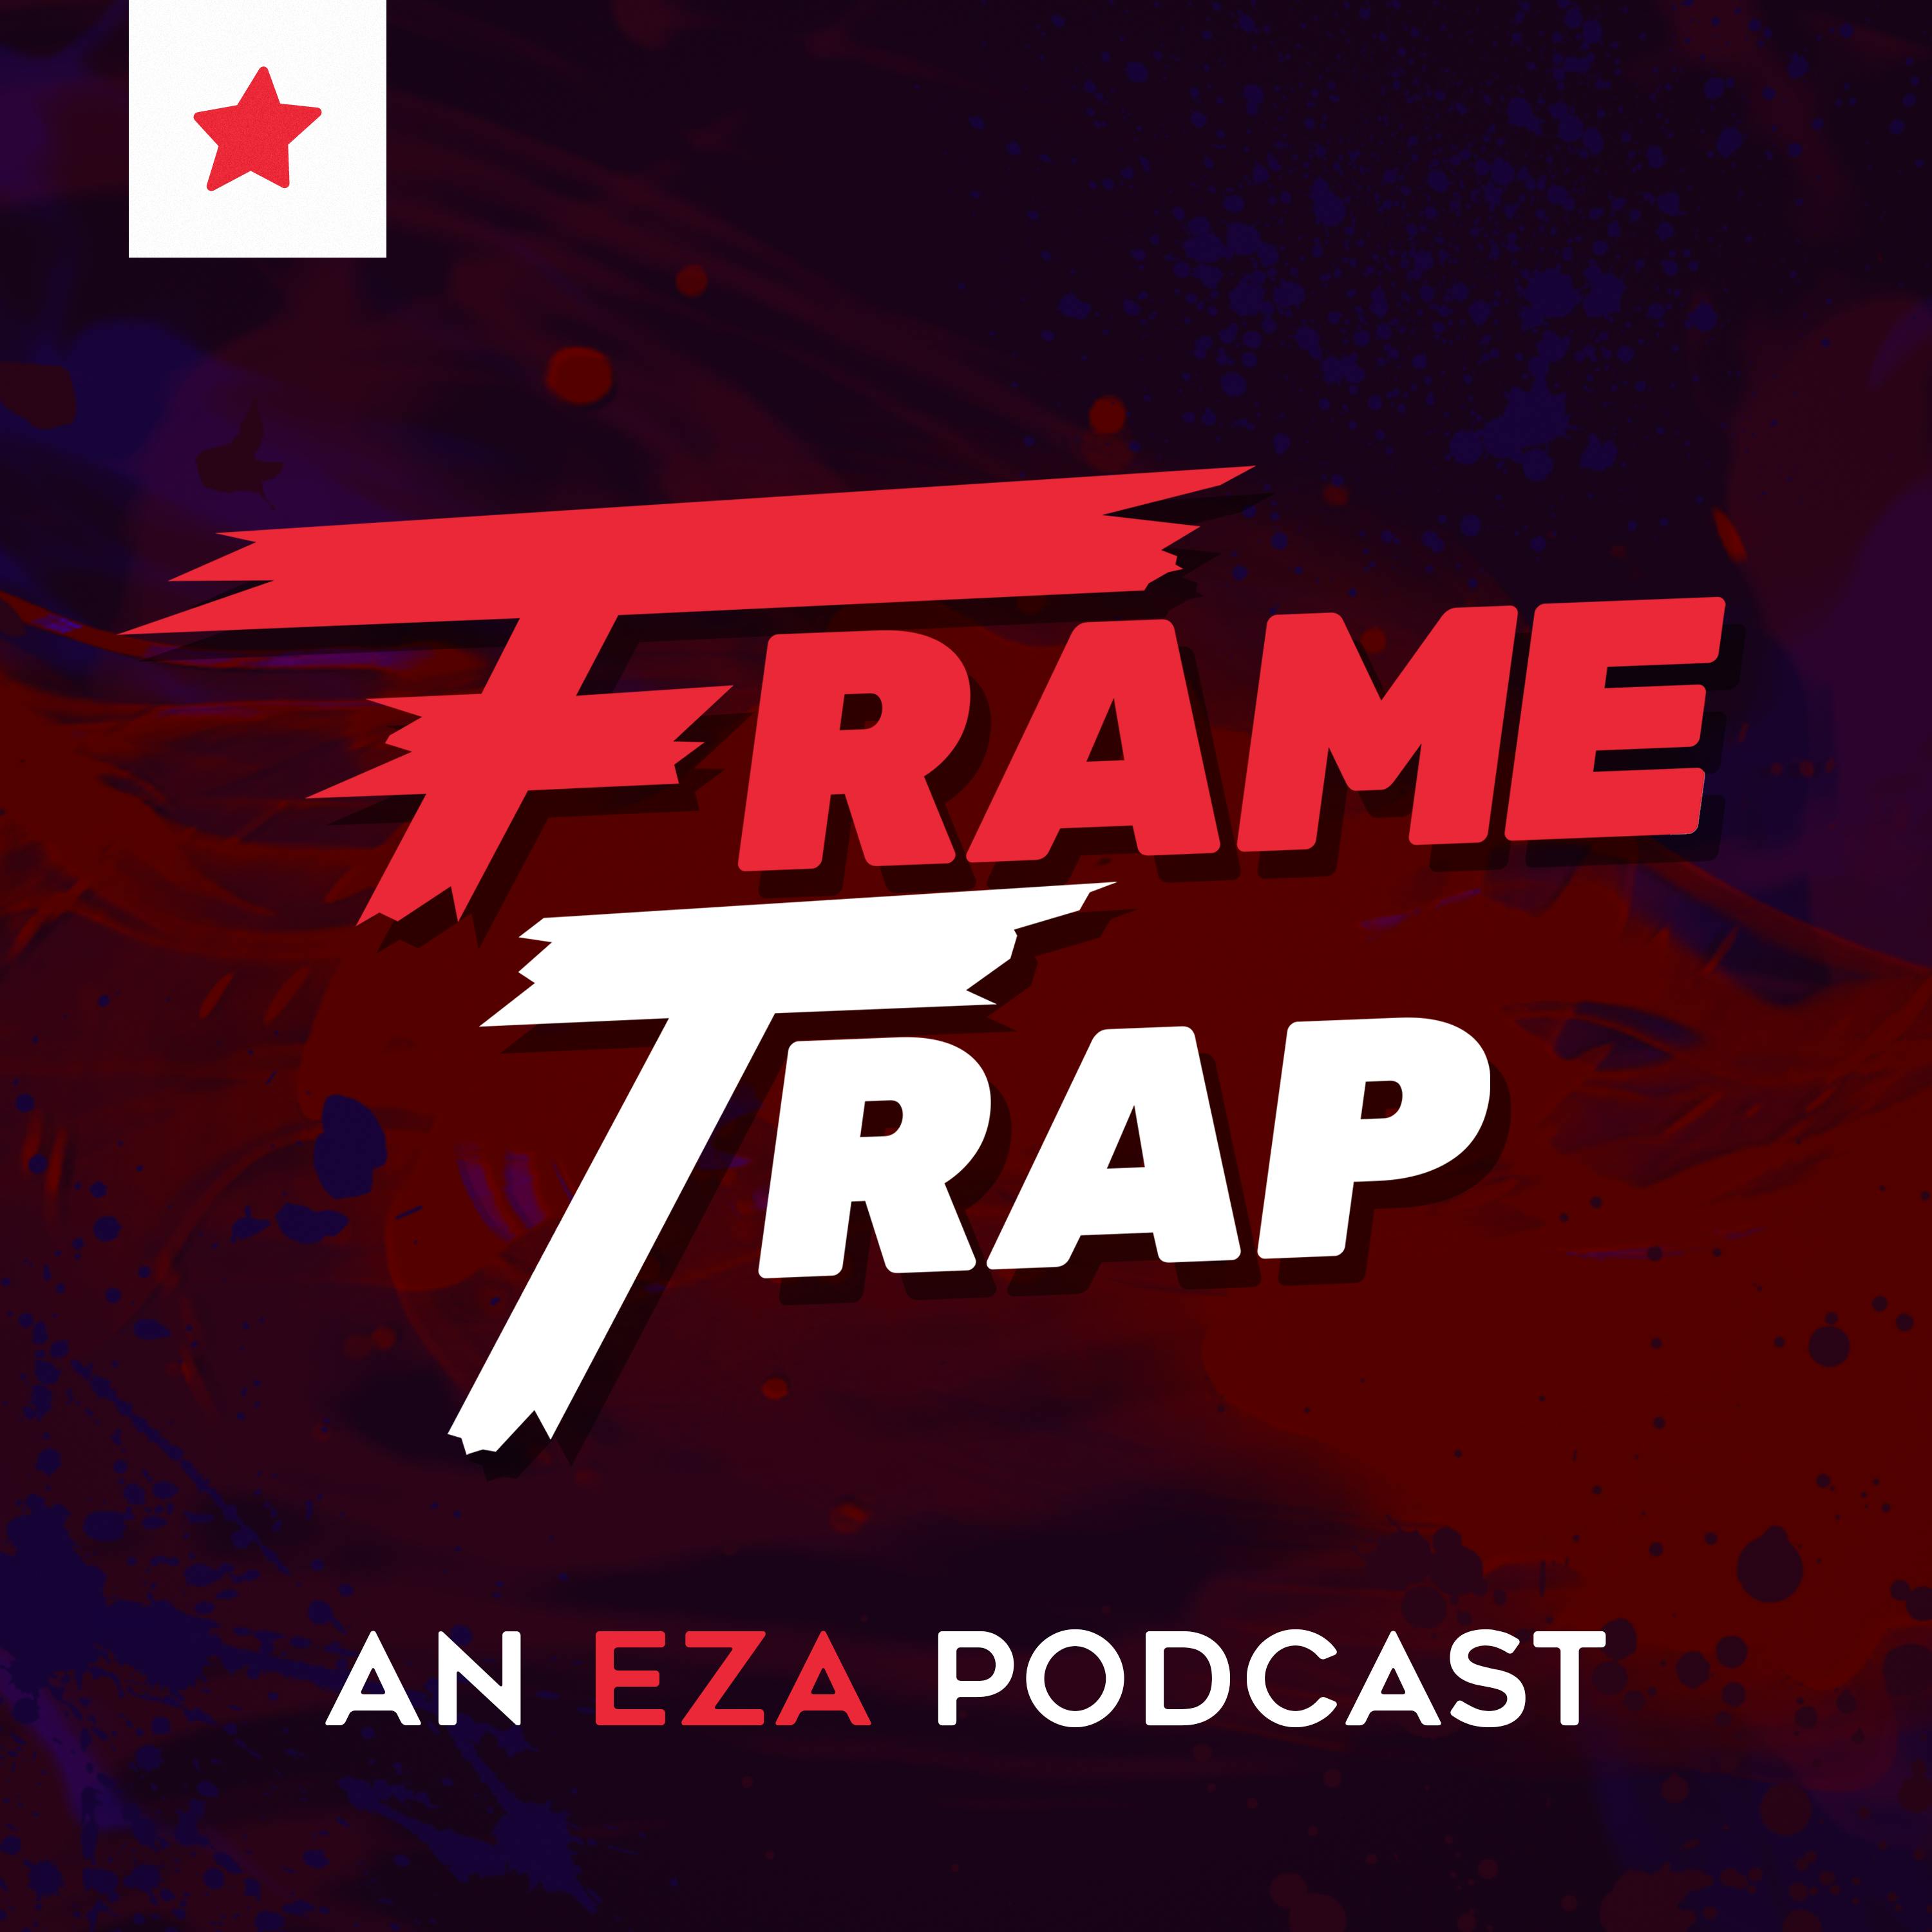 Frame Trap - Episode 182 "Bosman Check In"